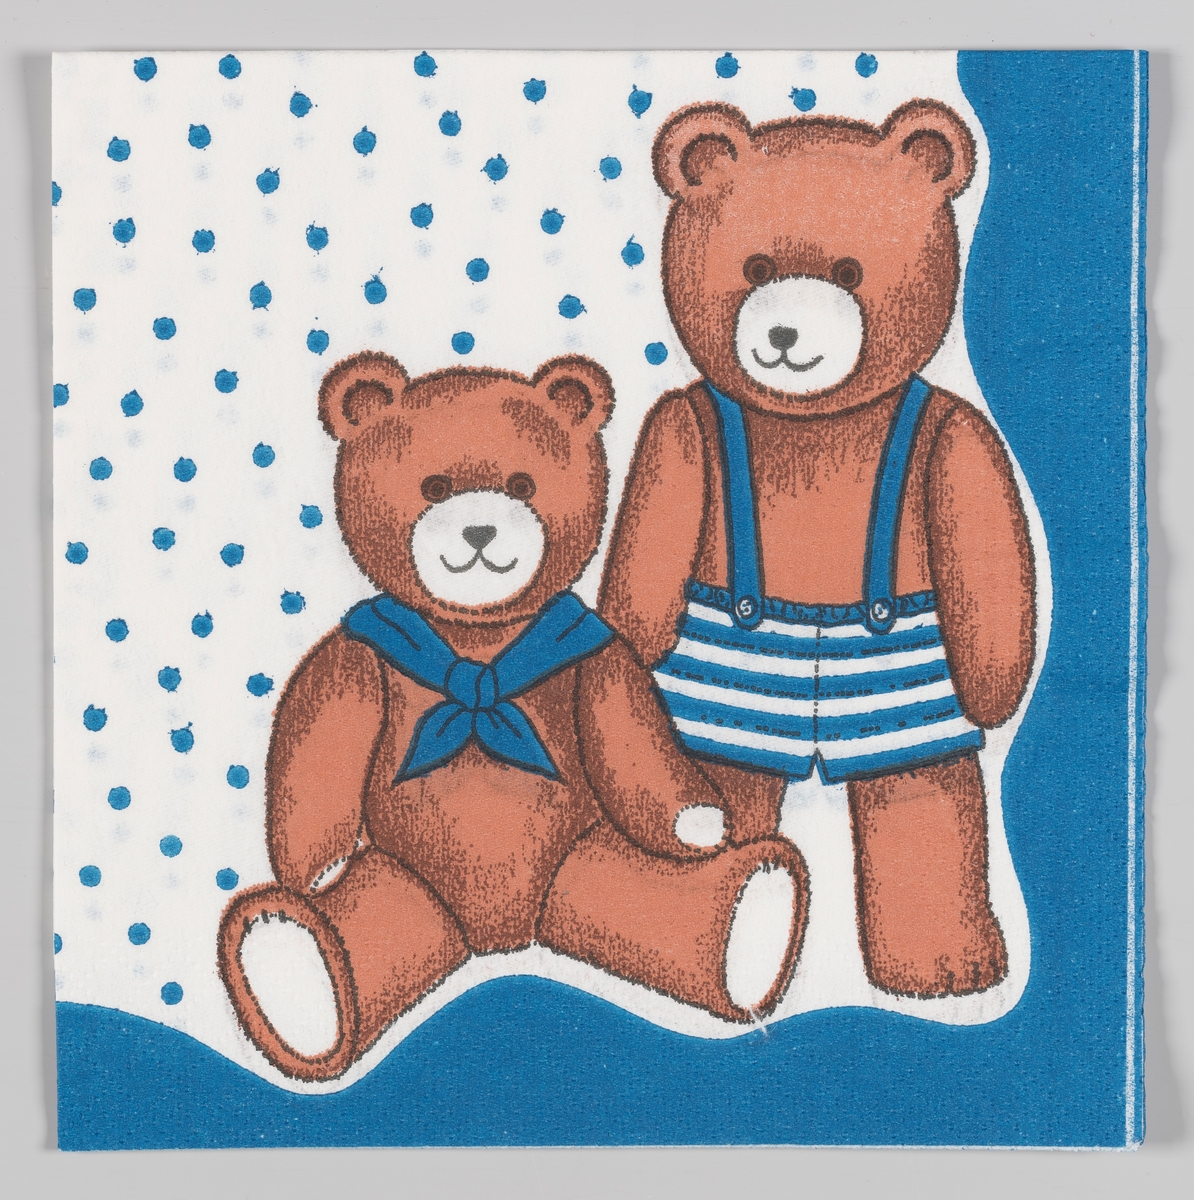 En sittende teddybjørn med halsklede og en stående teddybjørn med stripete korte bukser med seler.